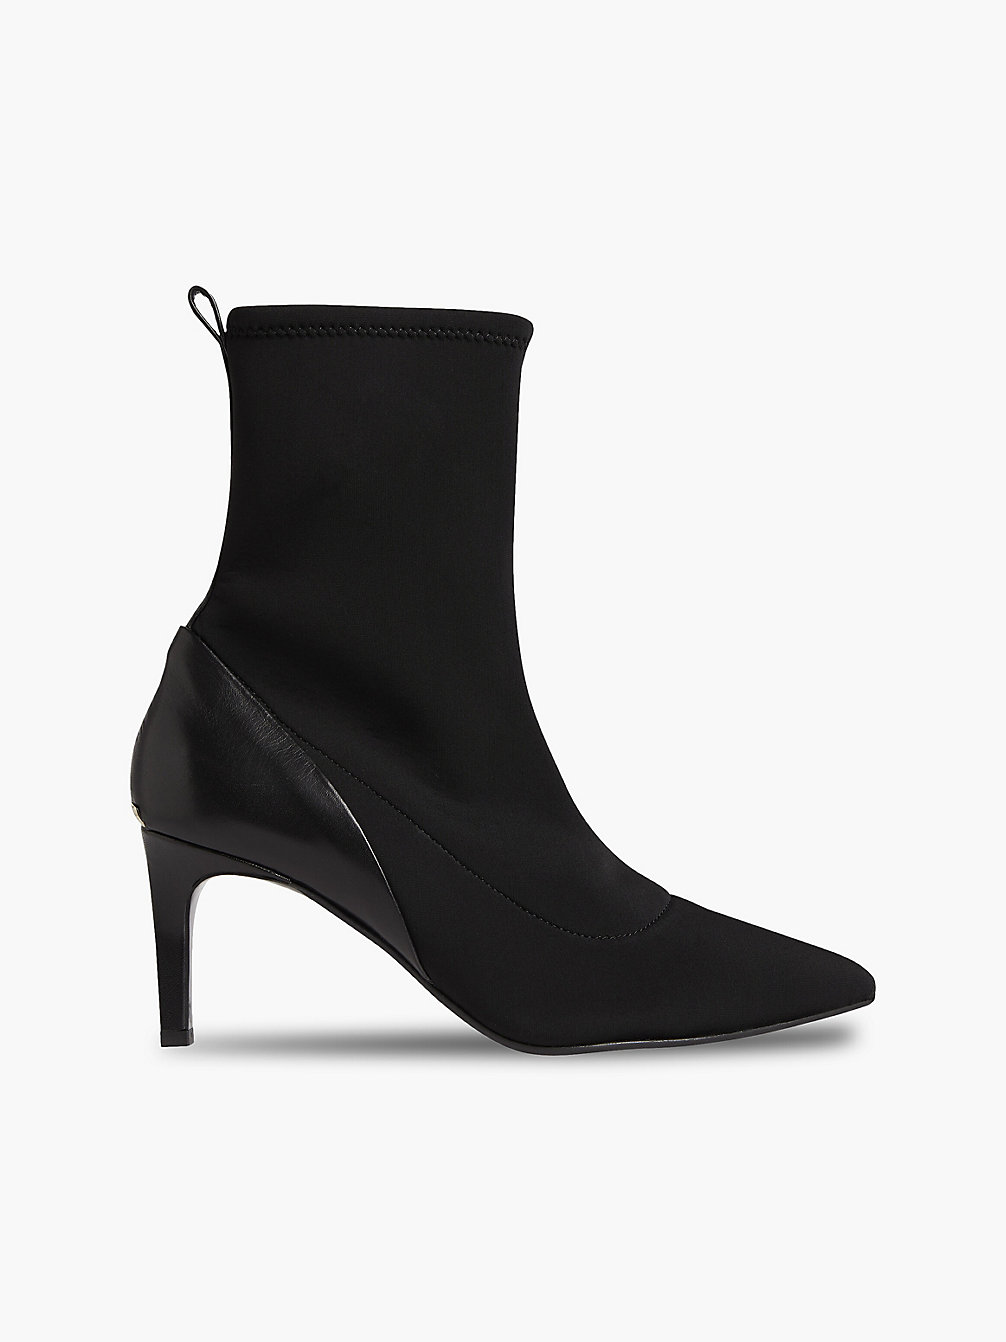 CK BLACK > Ankle-Boots Mit Absatz Aus Leder Und Neopren > undefined Damen - Calvin Klein